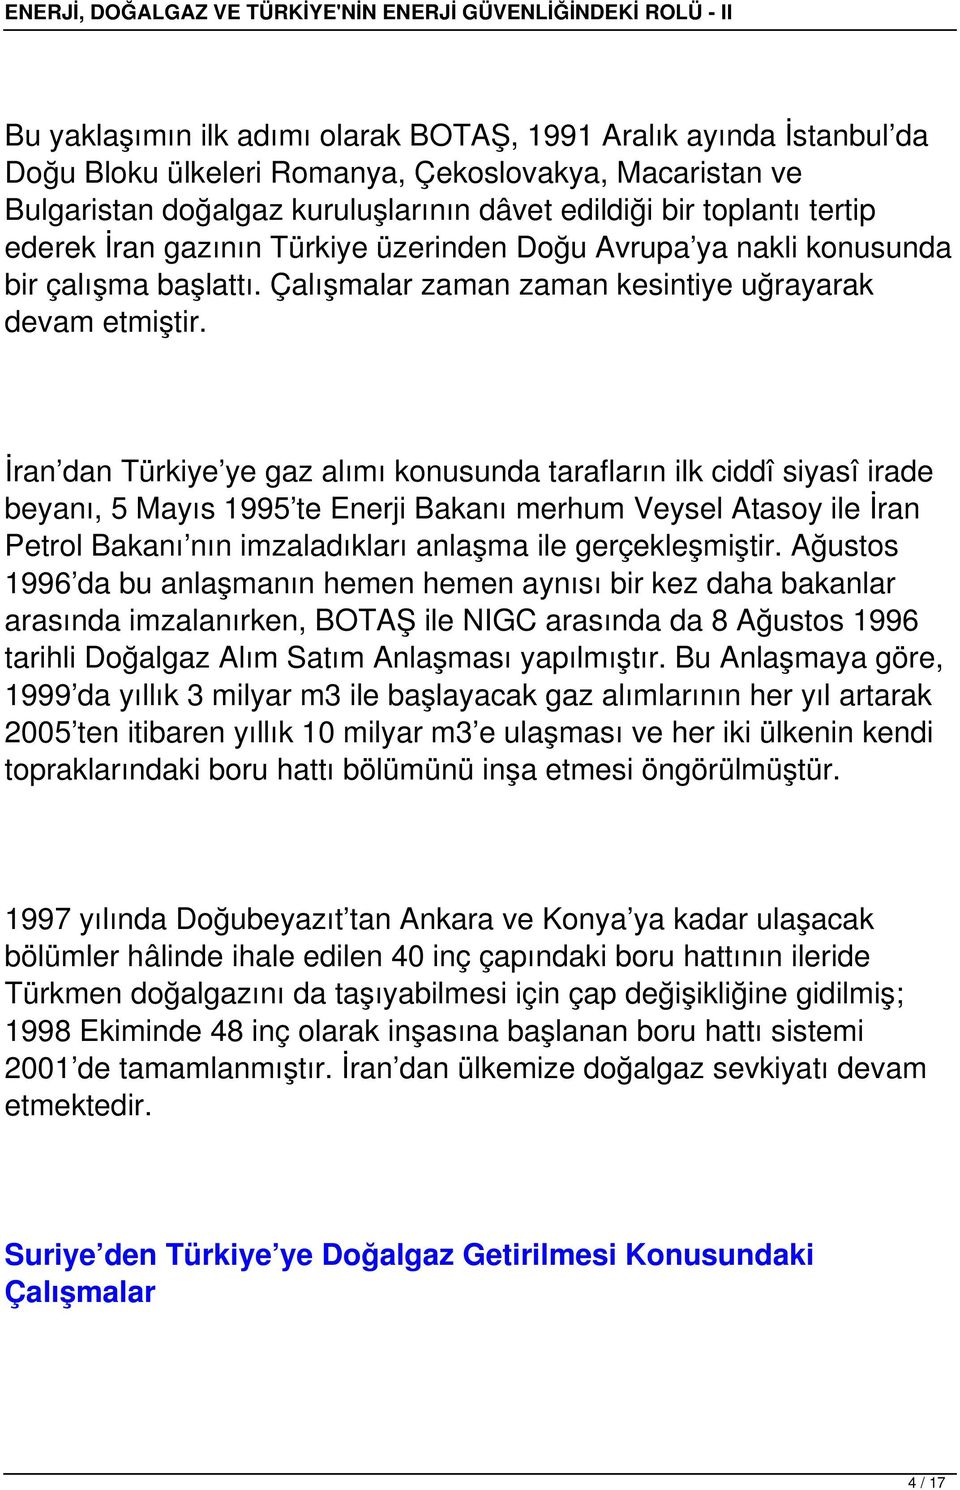 İran dan Türkiye ye gaz alımı konusunda tarafların ilk ciddî siyasî irade beyanı, 5 Mayıs 1995 te Enerji Bakanı merhum Veysel Atasoy ile İran Petrol Bakanı nın imzaladıkları anlaşma ile